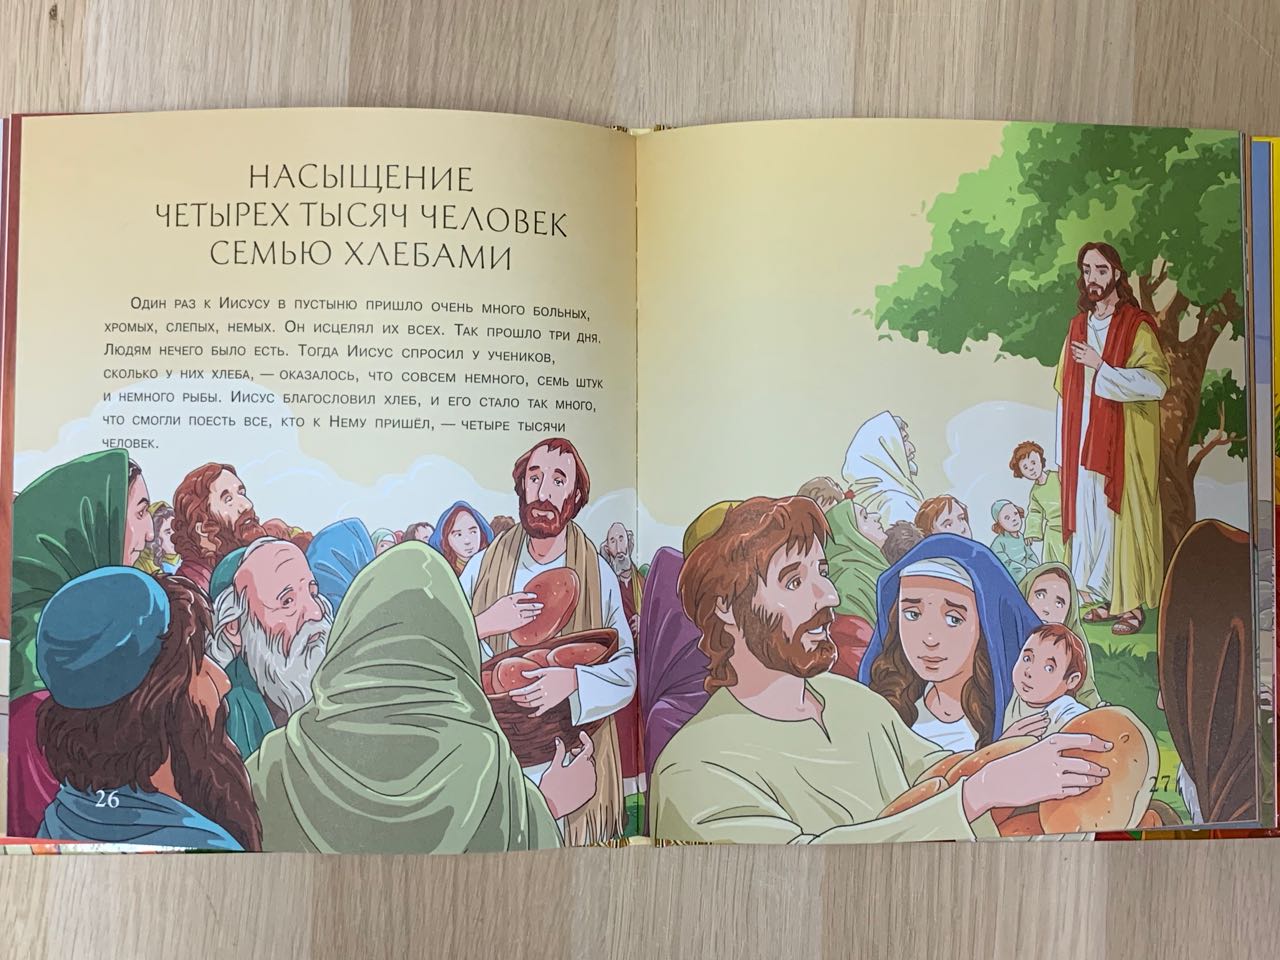 Библия для малышей иллюстрированная. Для детей 3+